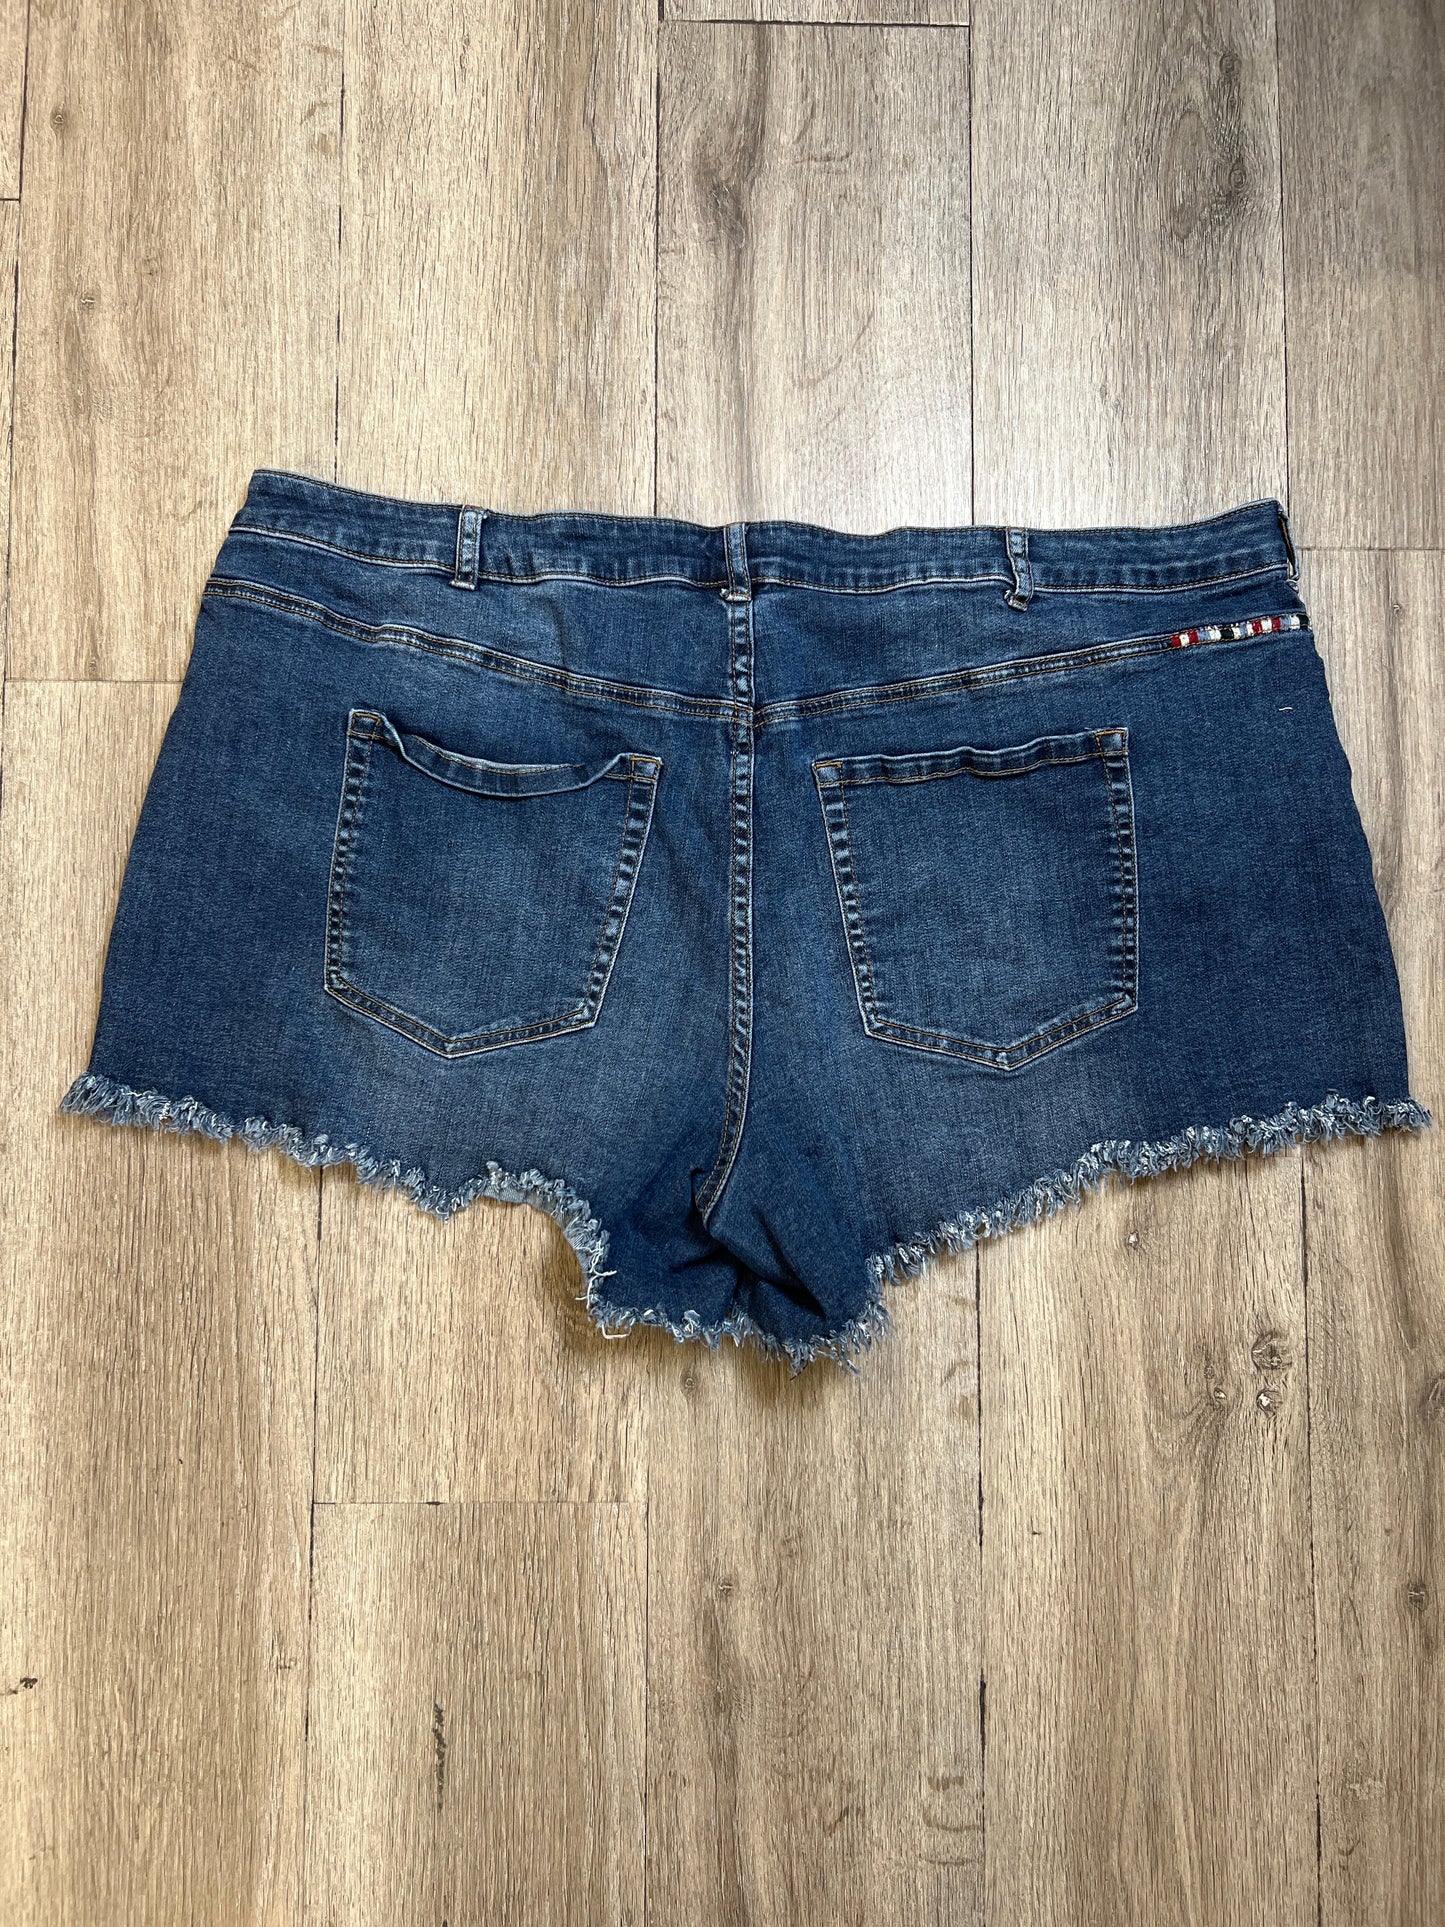 Shorts By Lane Bryant  Size: 3x